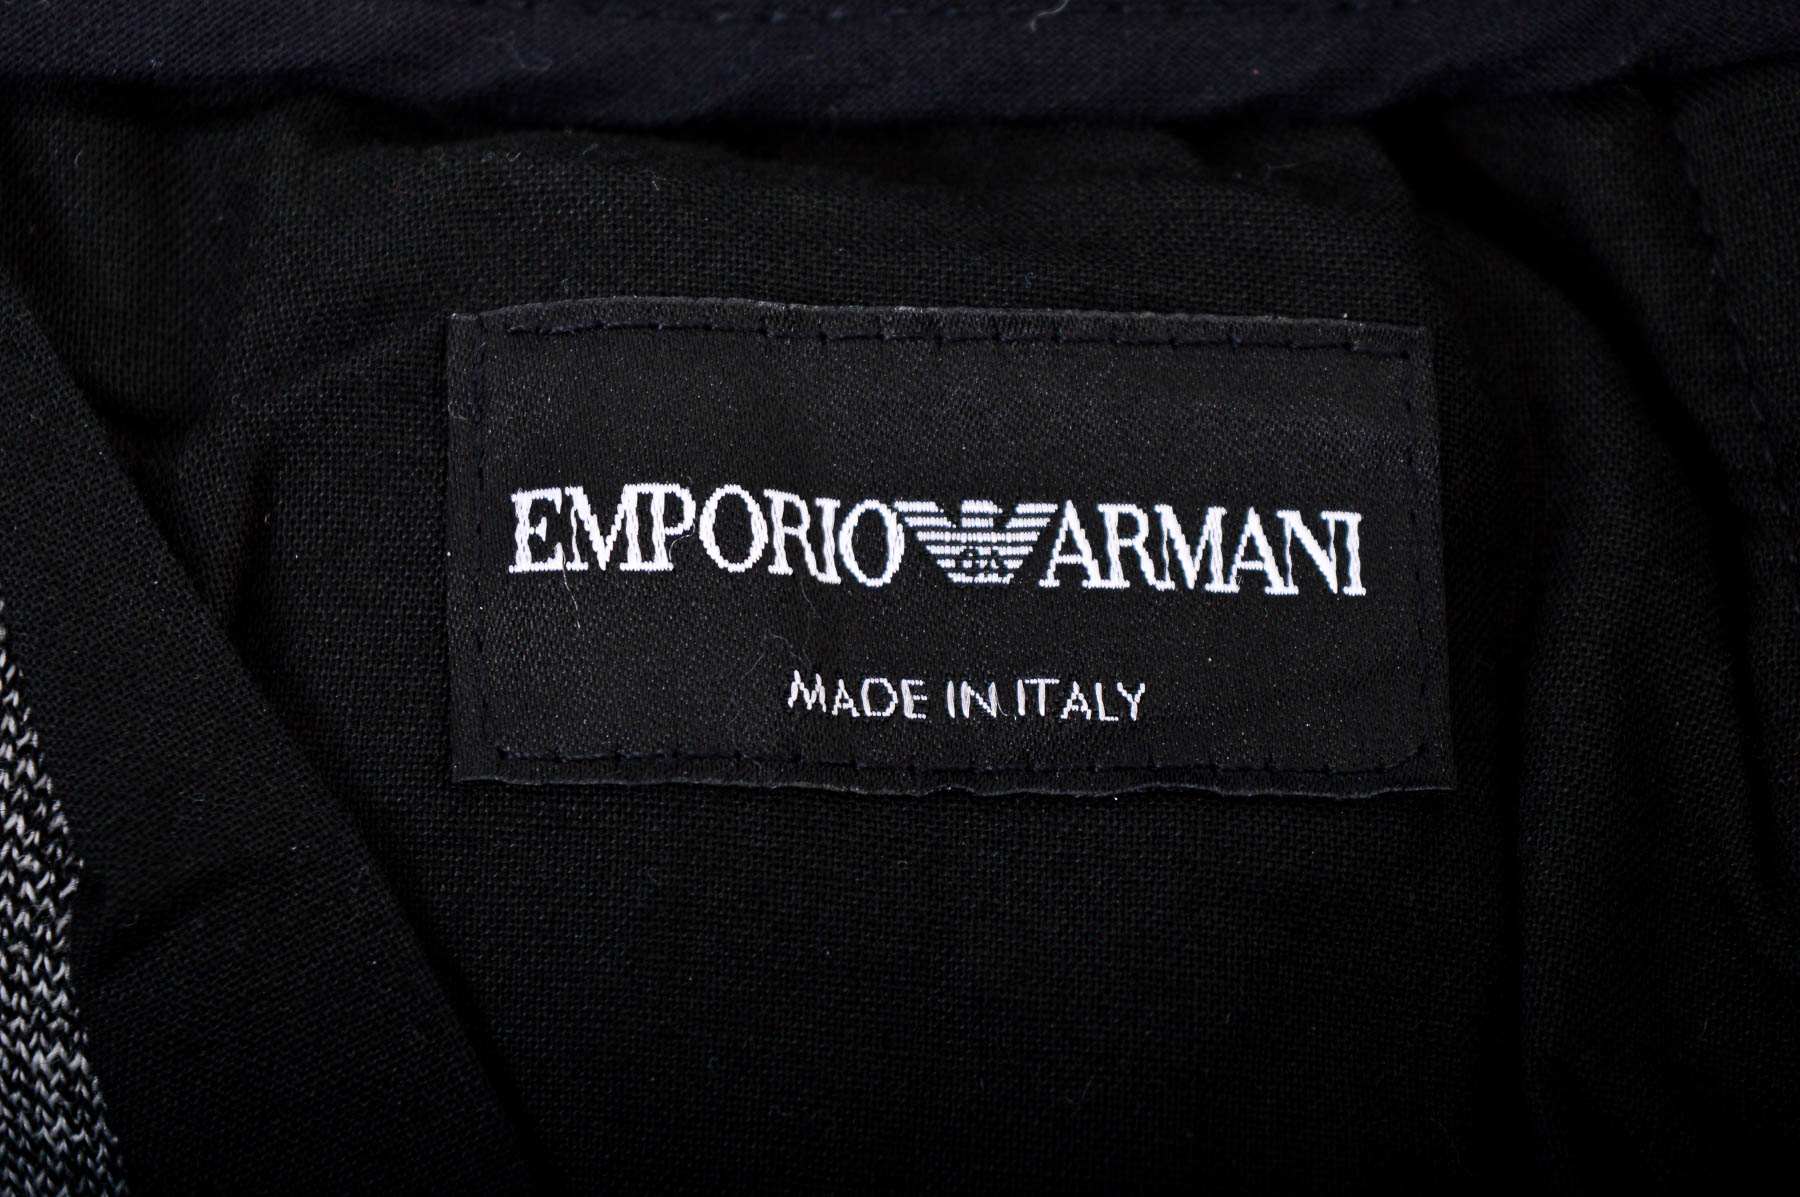 Men's trousers - EMPORIO ARMANI - 2